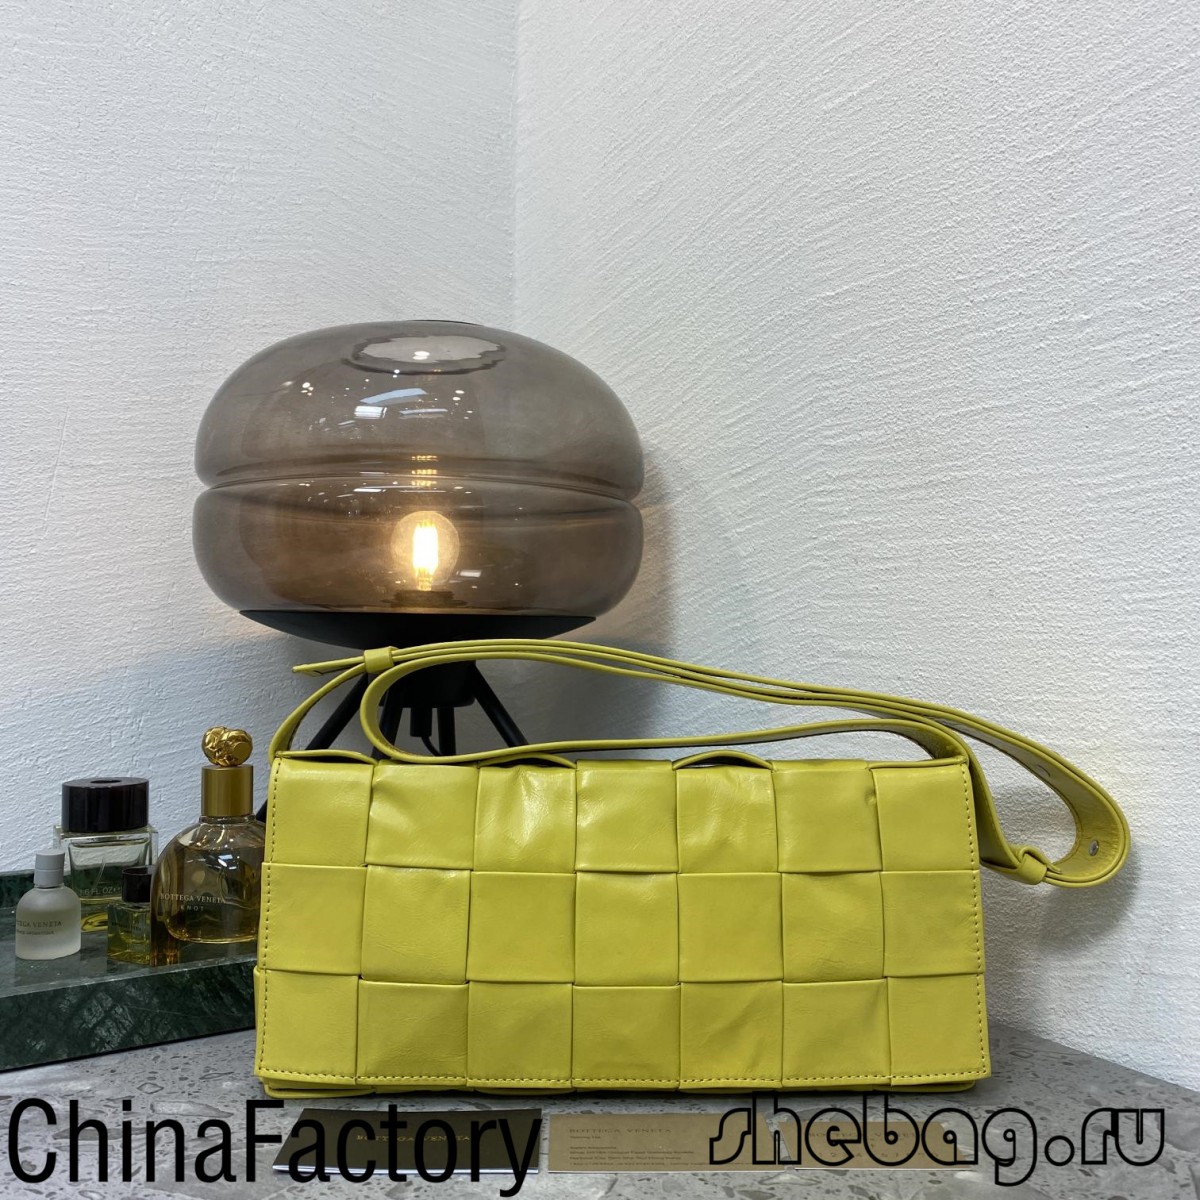 Най-популярната евтина дизайнерска чанта от 2022 Bottega Veneta Cassette!-Най-качествена фалшива чанта Louis Vuitton Онлайн магазин, Реплика на дизайнерска чанта ru